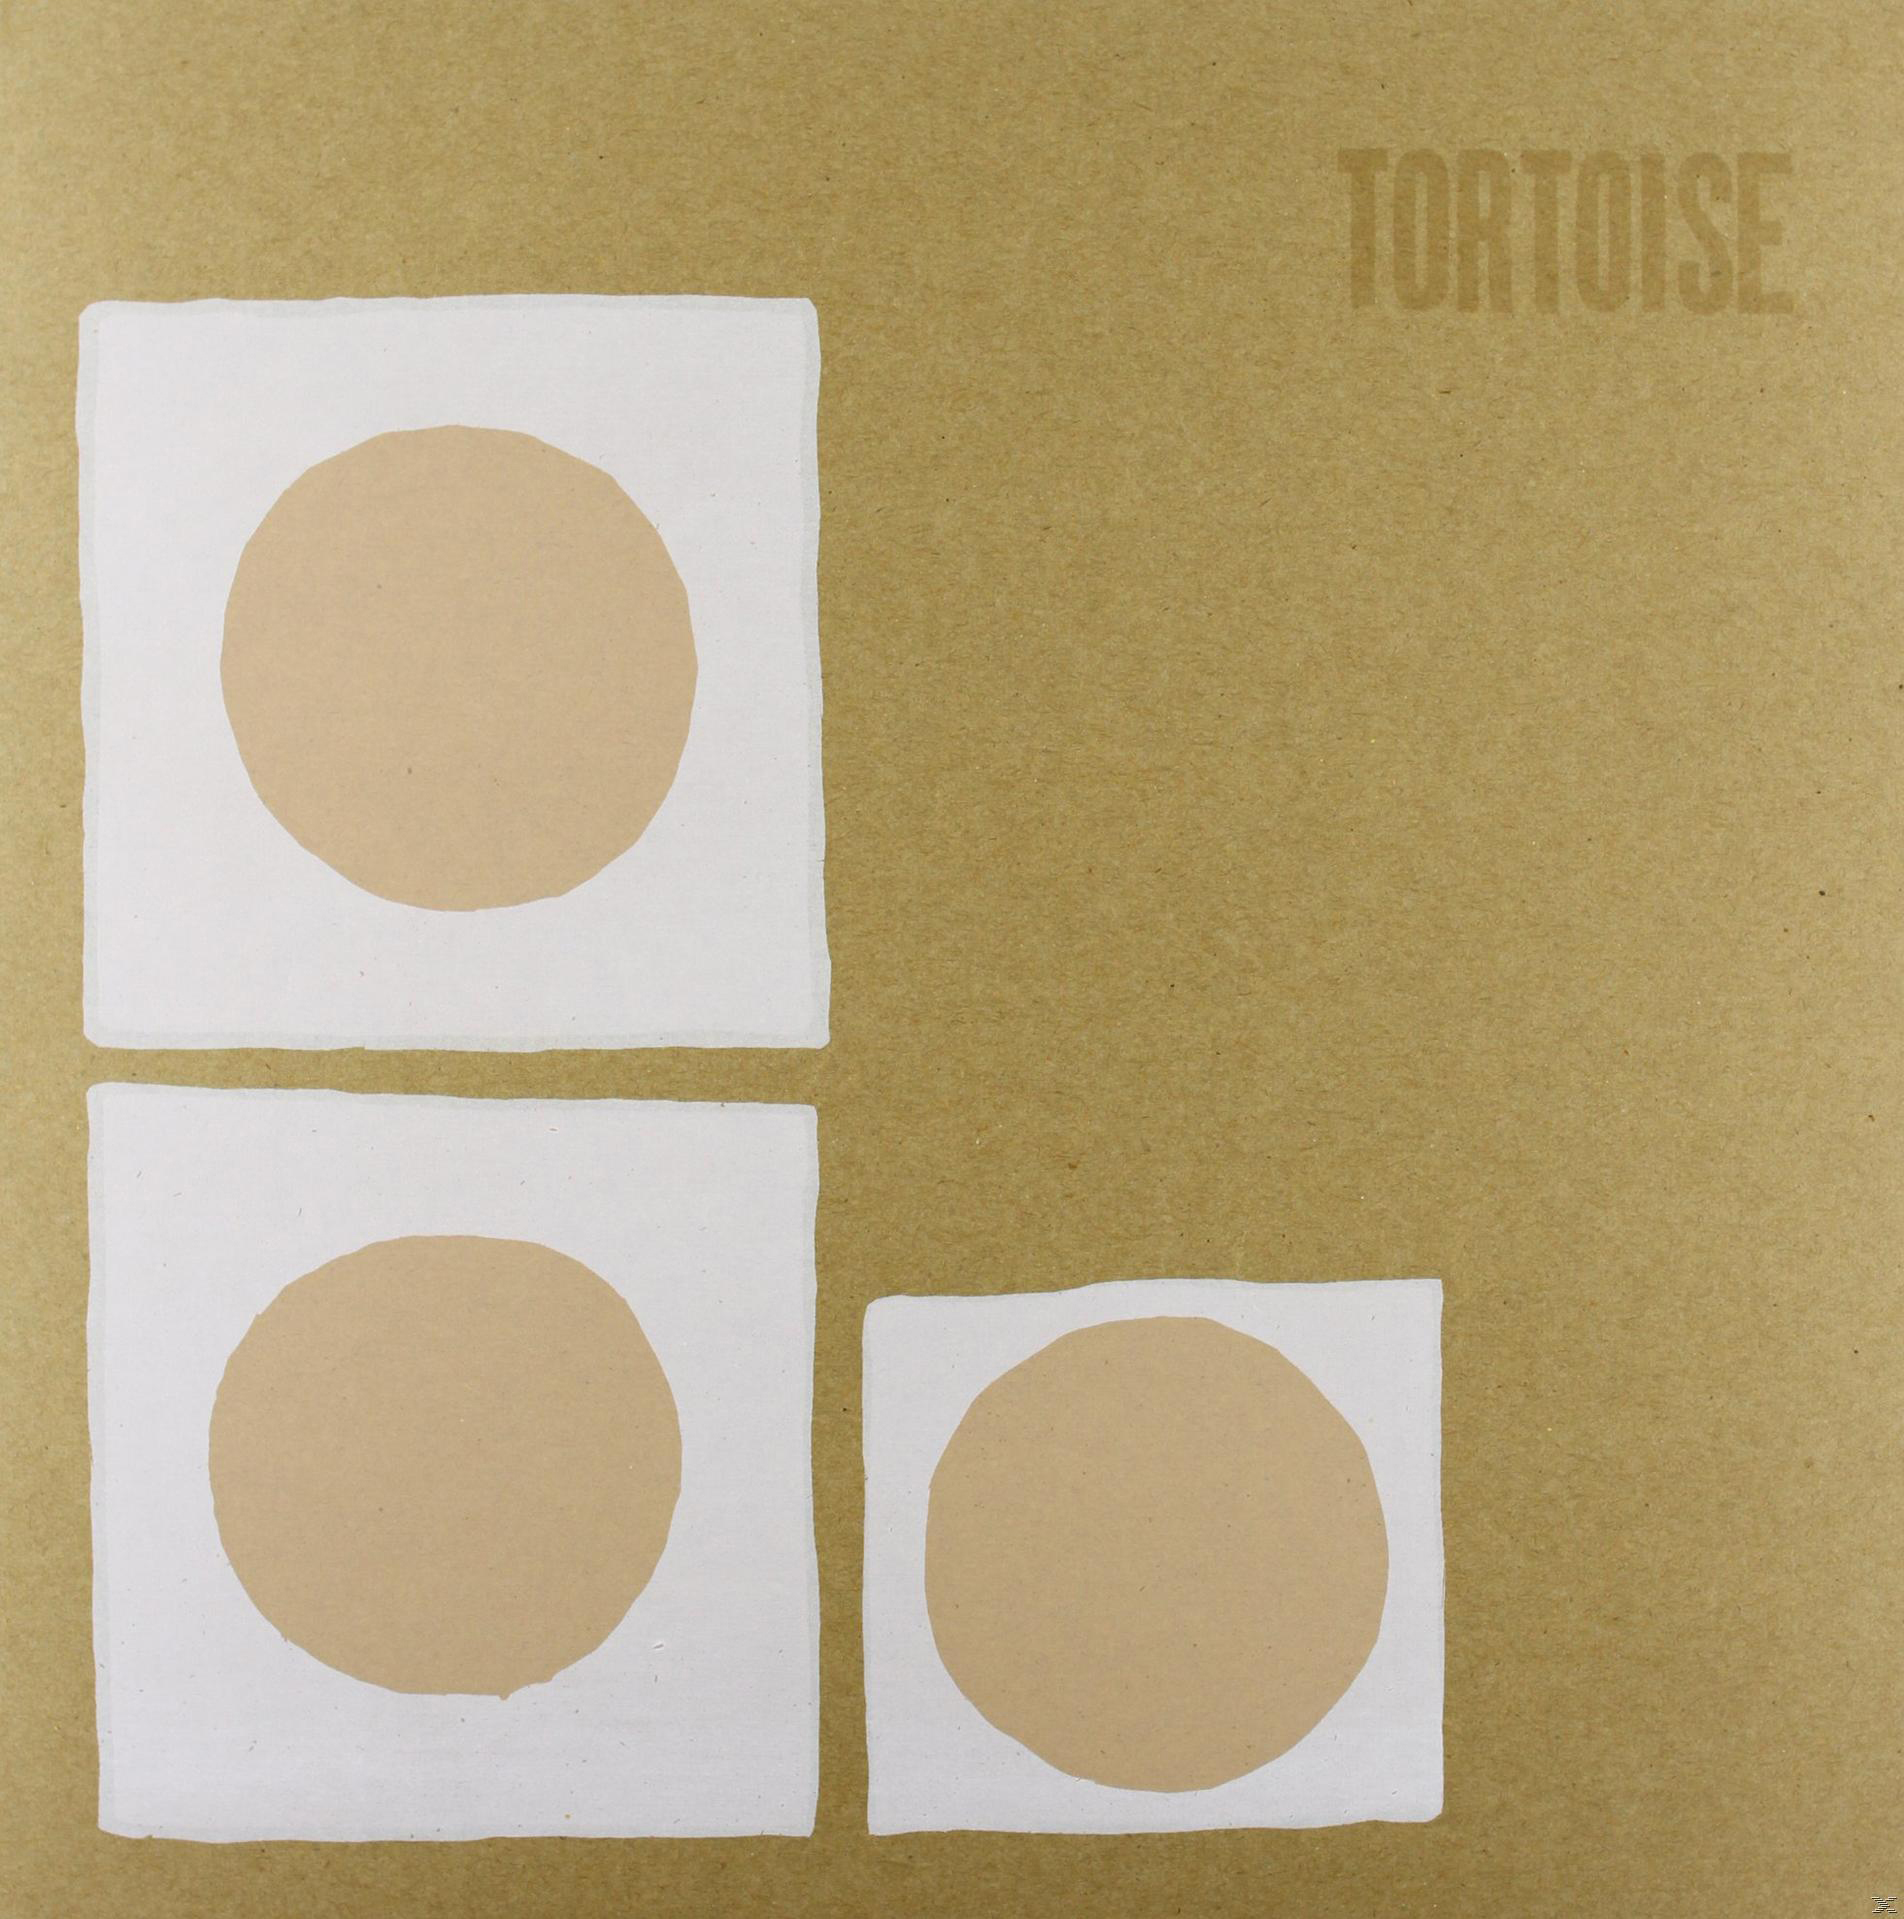 - - Tortoise (Vinyl) Tortoise